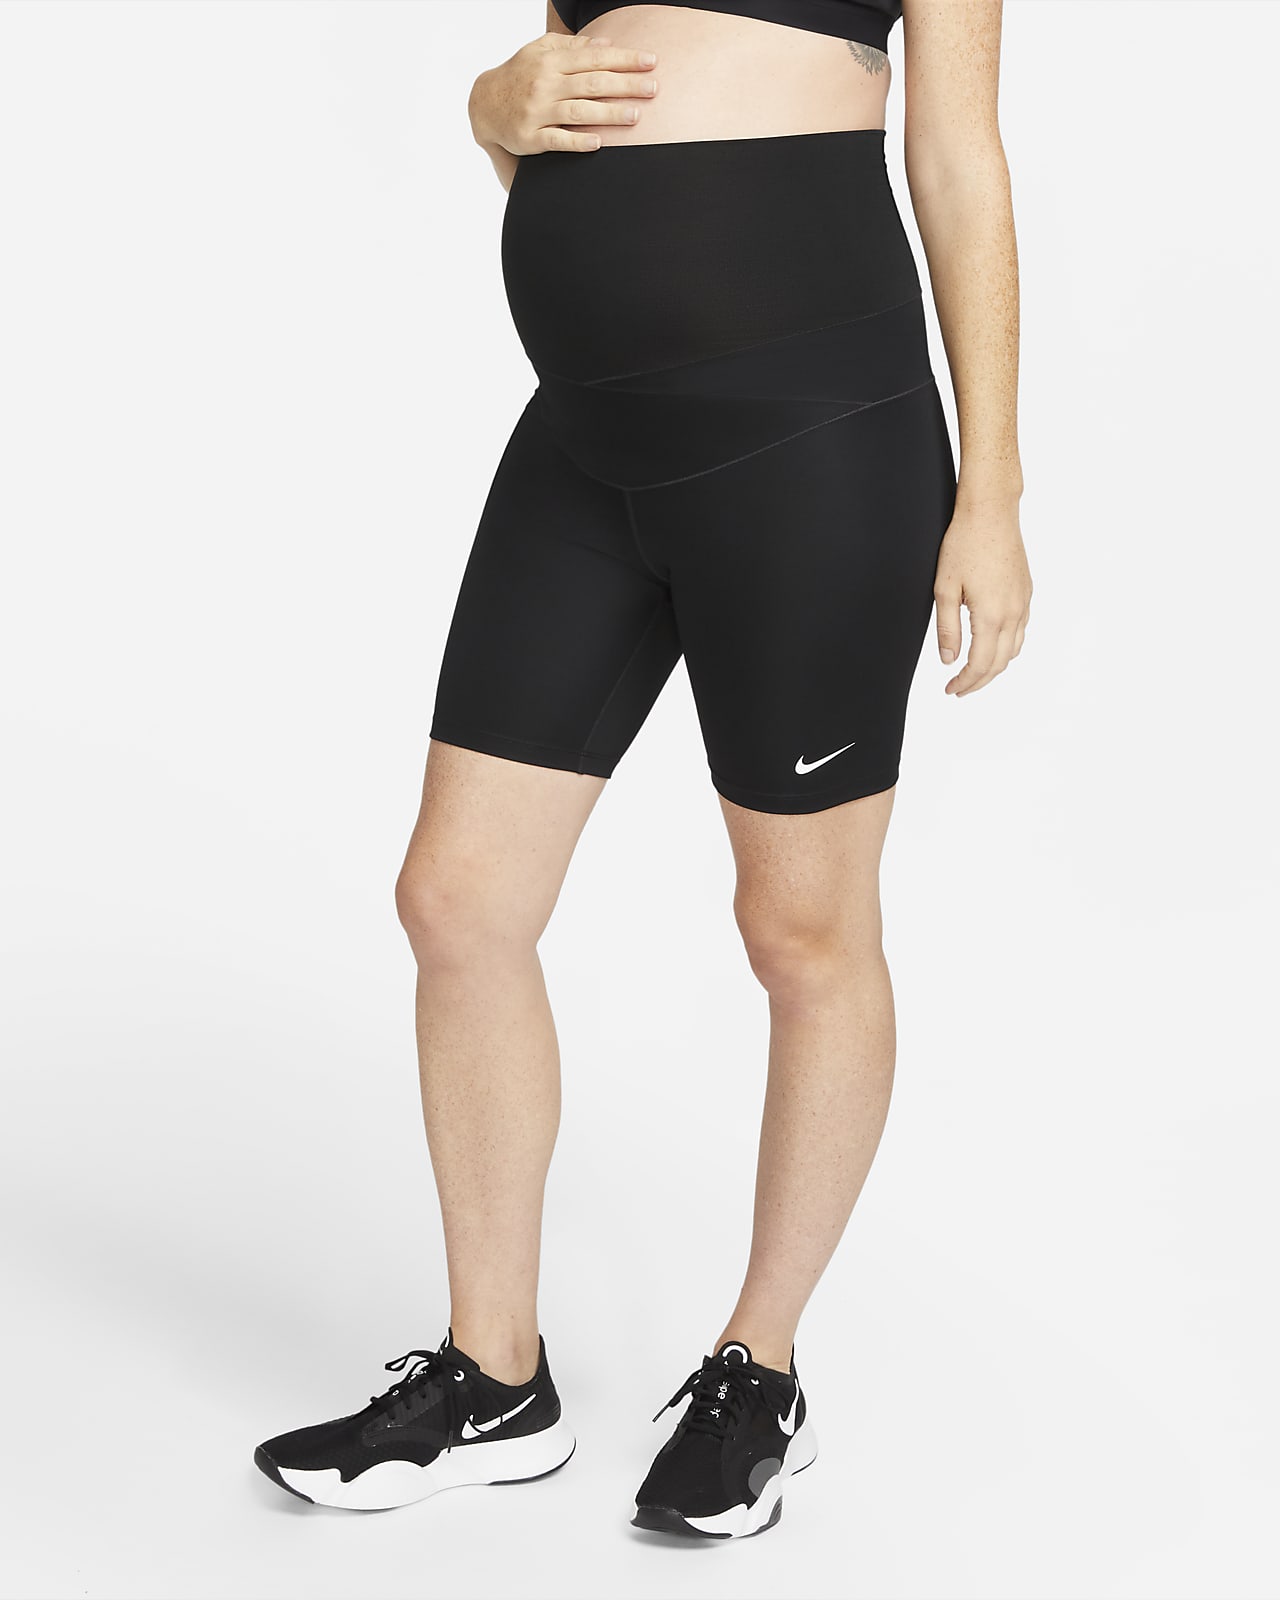 Nike One (M) Pantalón corto de ciclismo de 18 cm (Maternidad) - Mujer